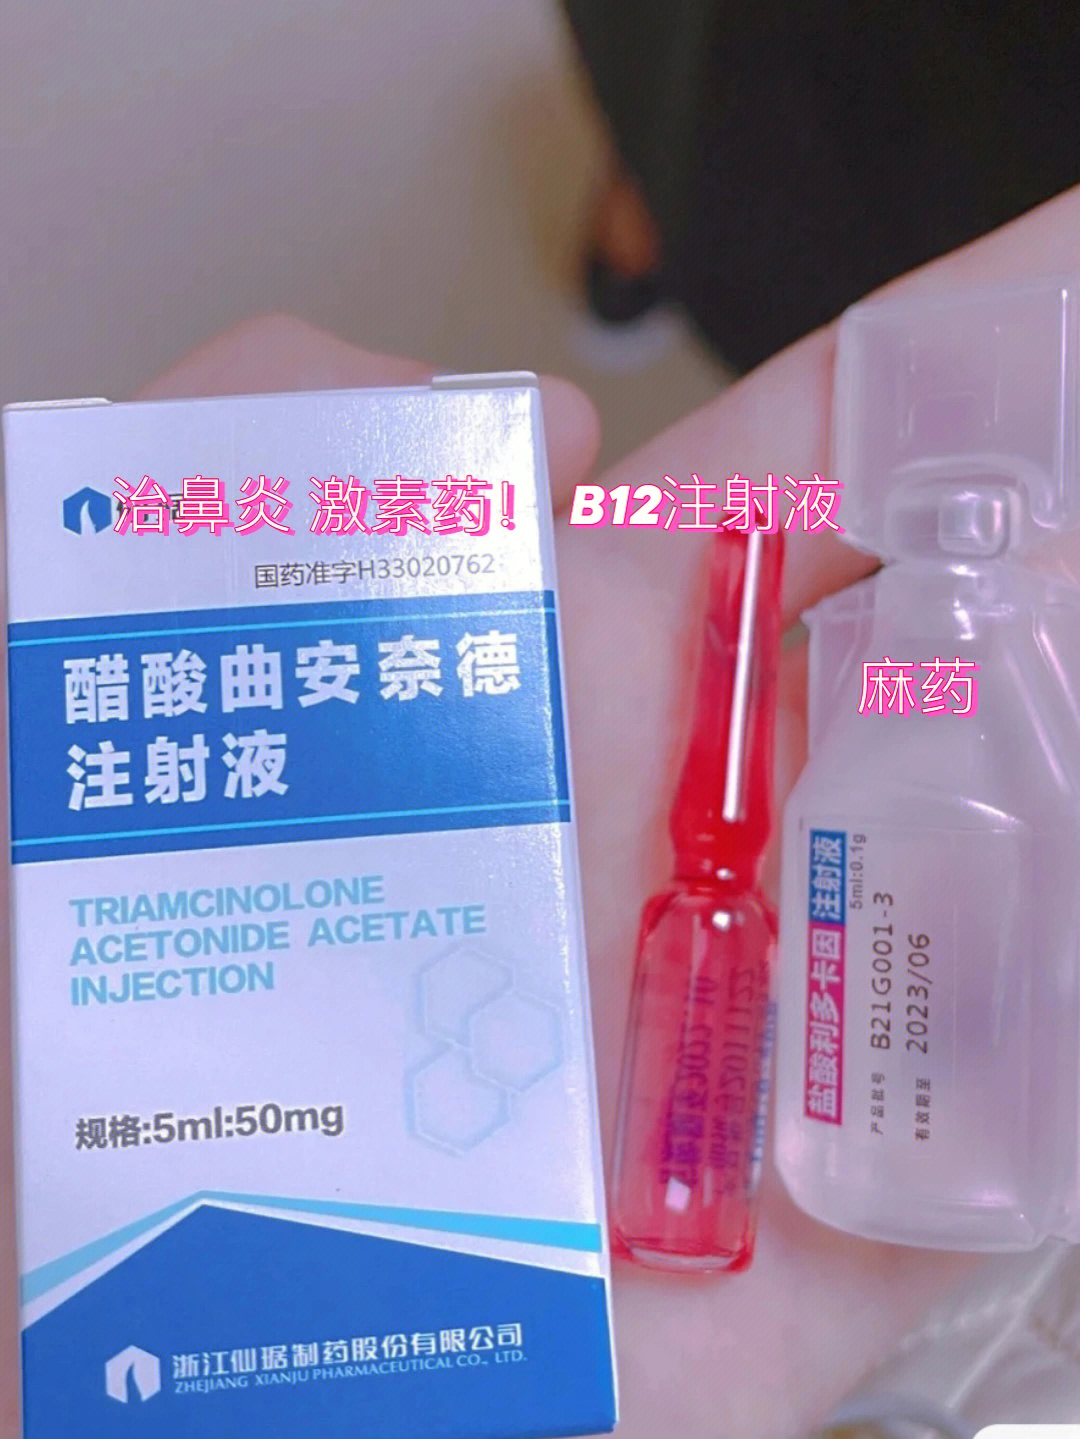 我人在北京,想回家注射鼻炎针,奈何疫情原因,迟迟回不去